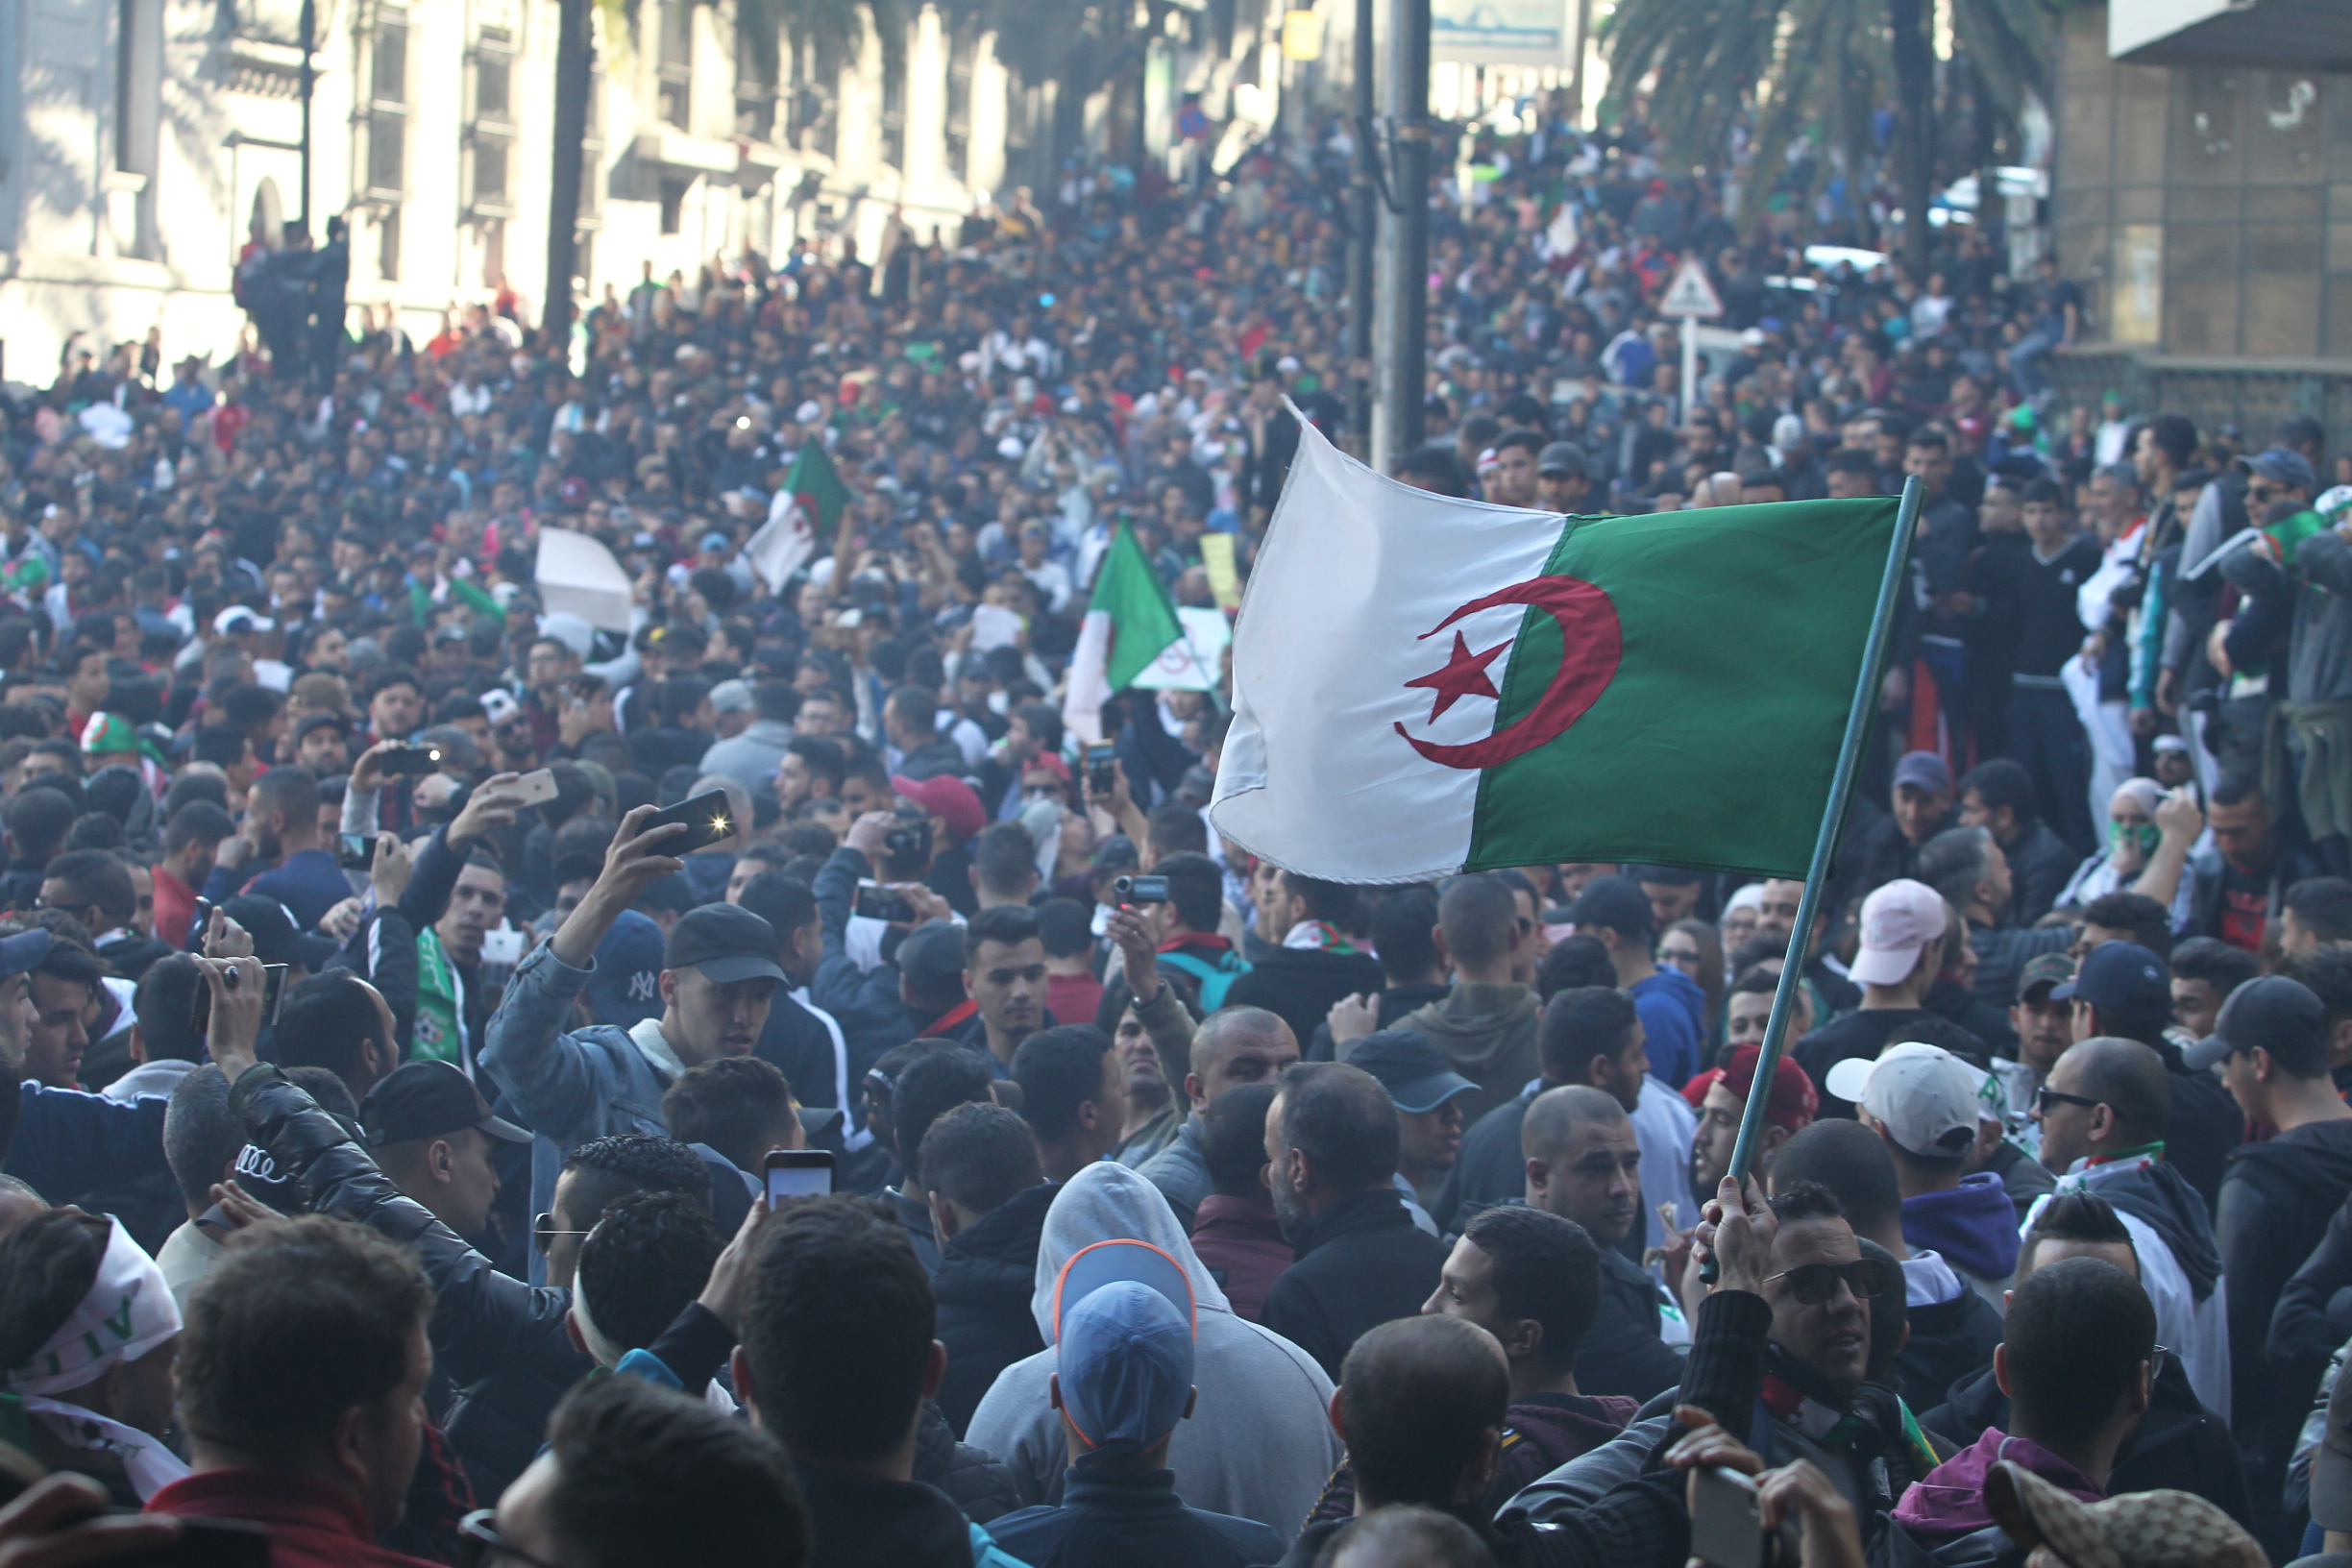 المعارضة الجزائرية تطلب استقالة بوتفليقة وحياد الجيش وتأجيل الانتخابات